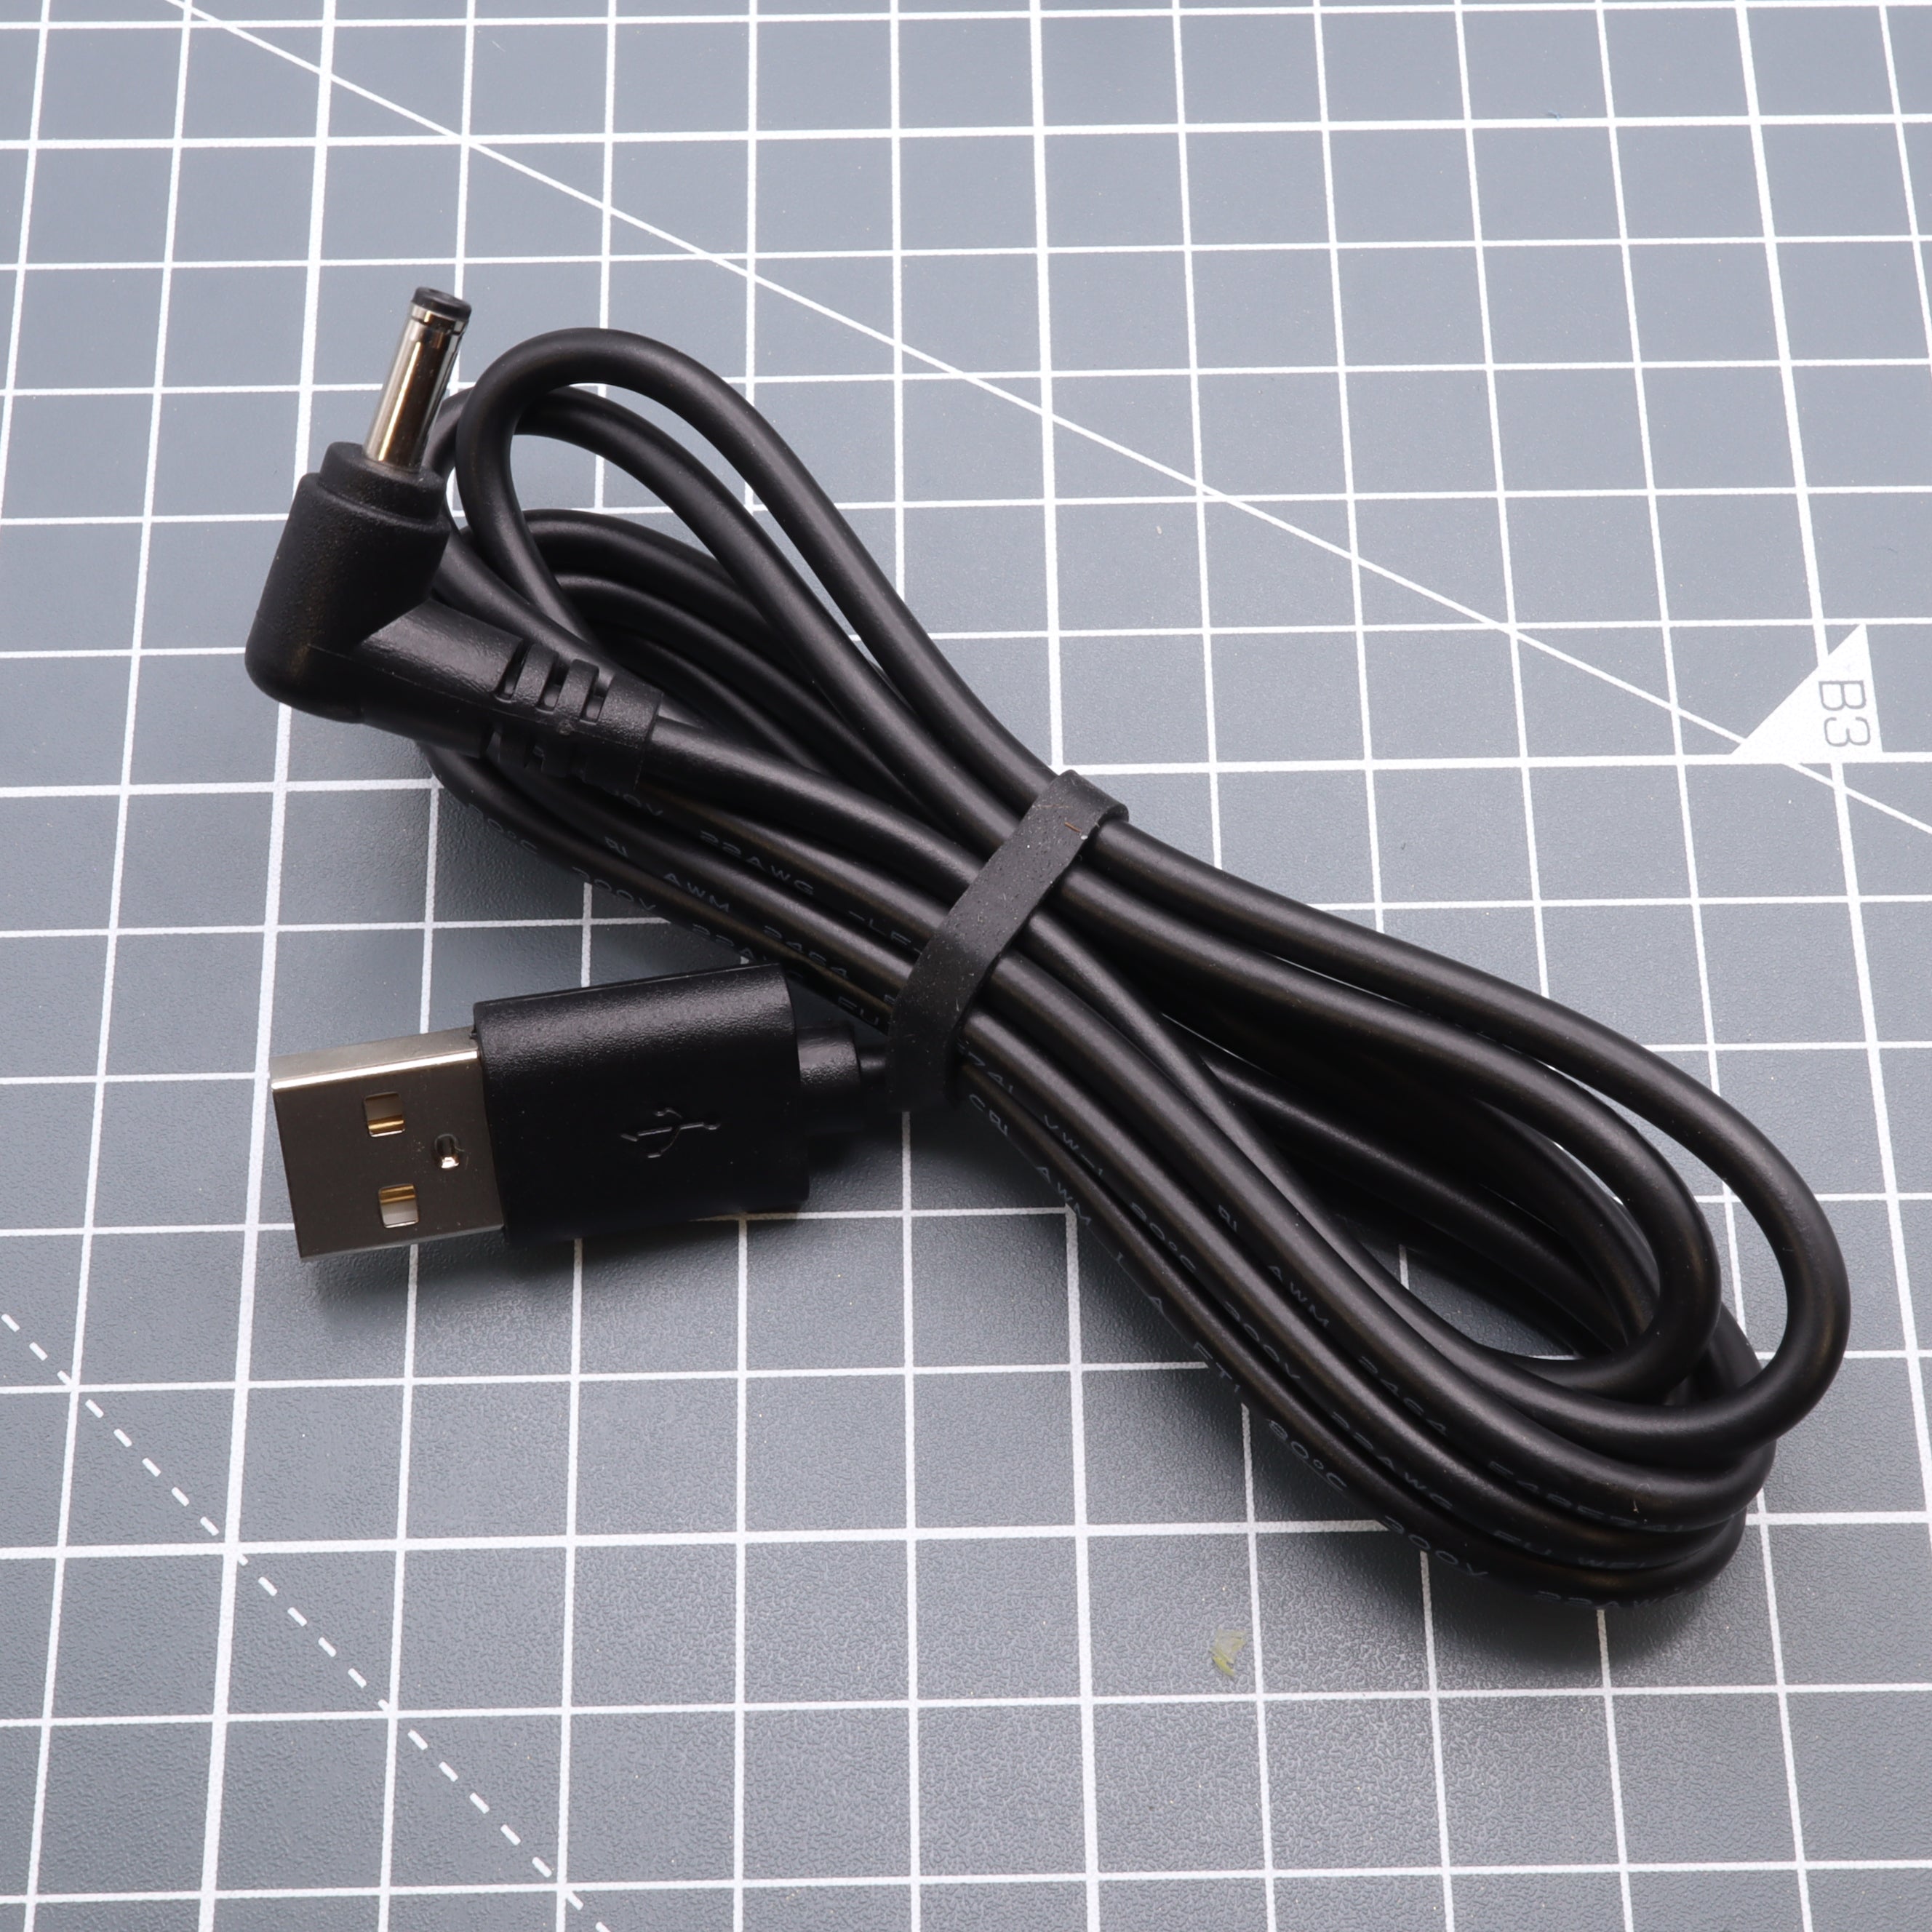 Game Boy Original DMG-01 5v USB Power Cable – Labfifteenco